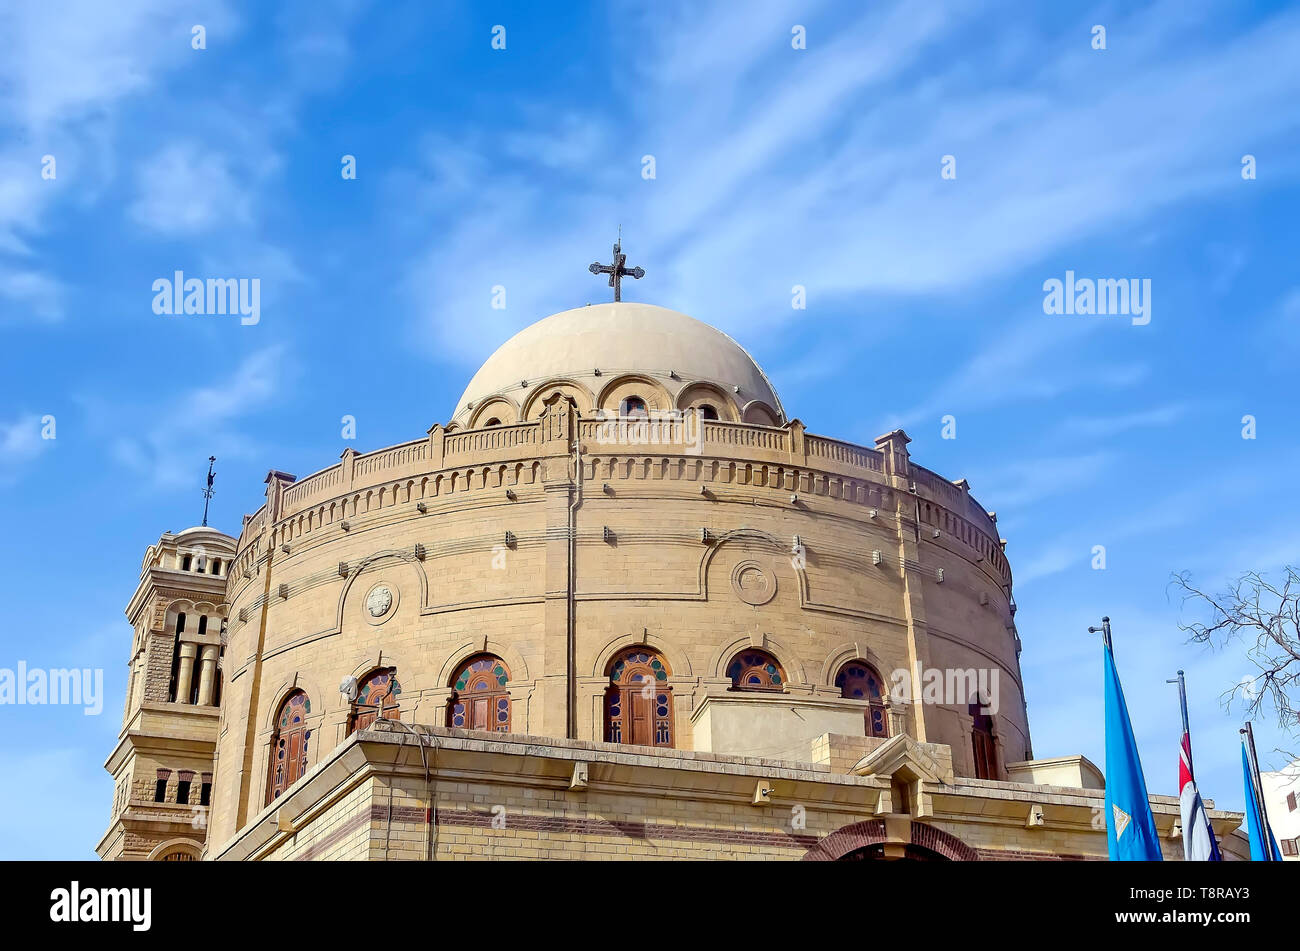 Kirche St. George ist ein Griechisch-orthodoxen. Seine äußeren Kuppel ist ein Wahrzeichen des alten Kairo Ägypten Stockfoto